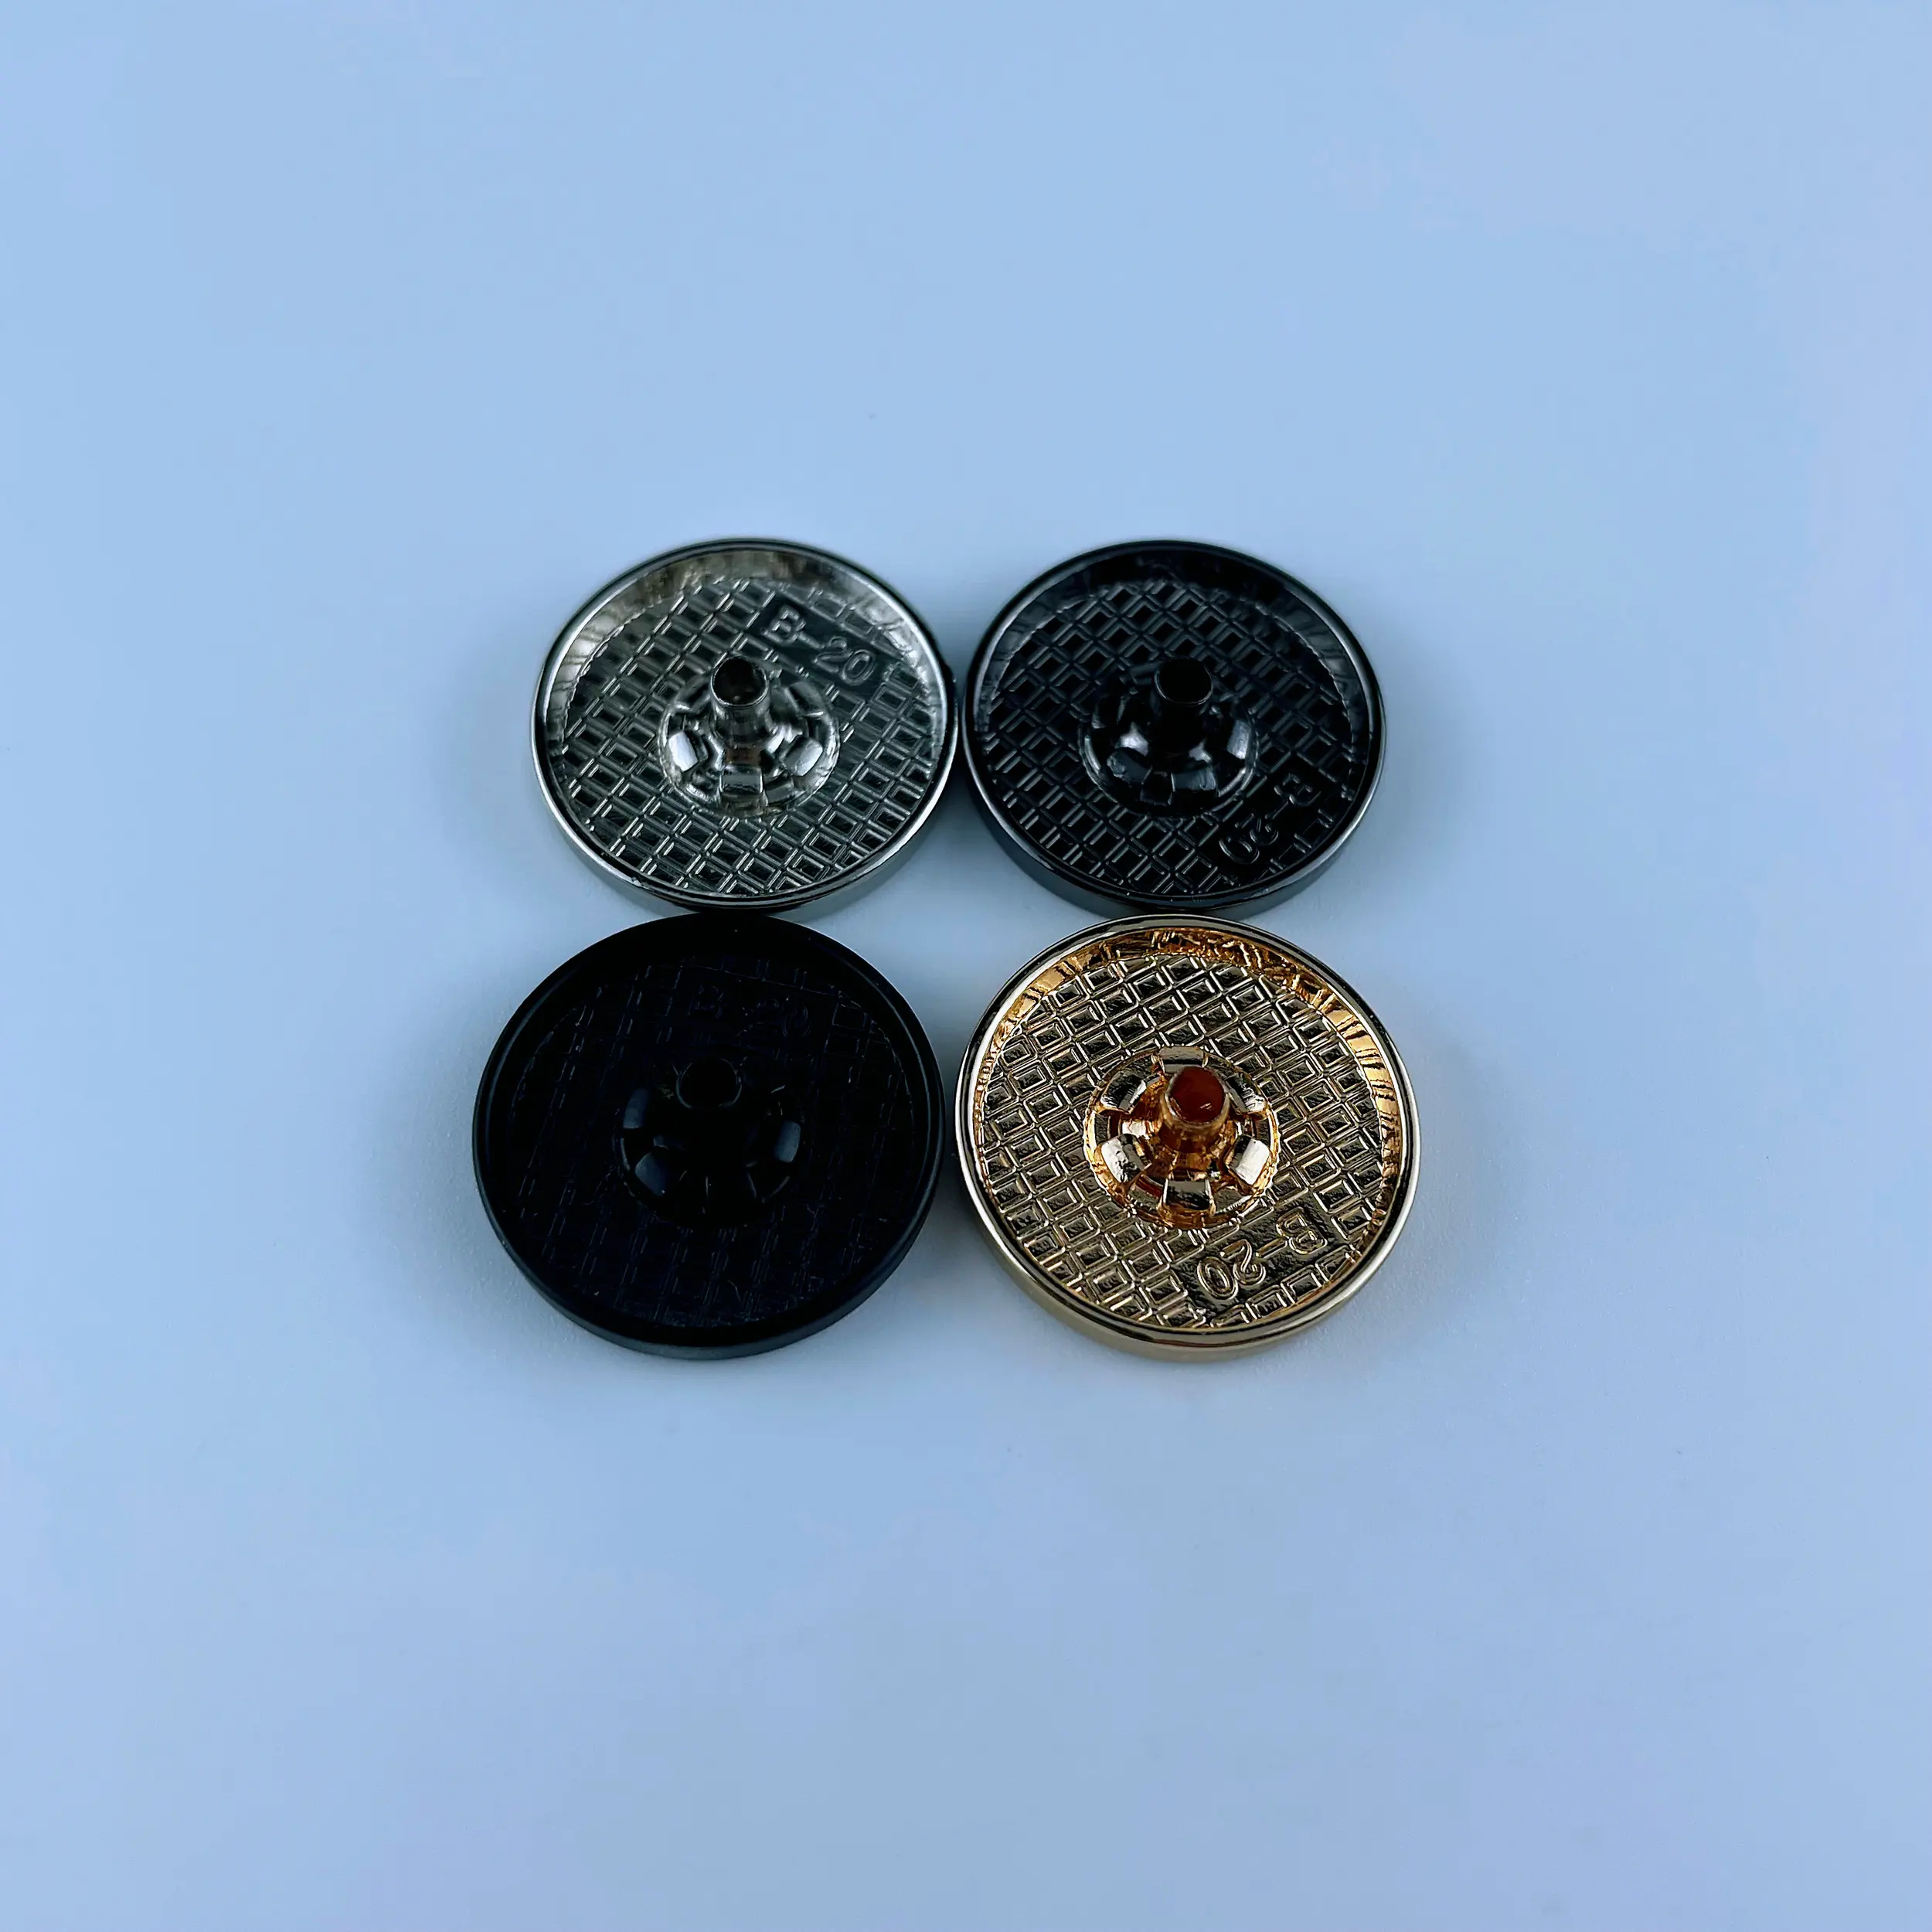 Attache 4 parties boutons pression placage tige face plate métal alliage de zinc rond Vt3 plastique pour nouveau design personnalisé sans nickel